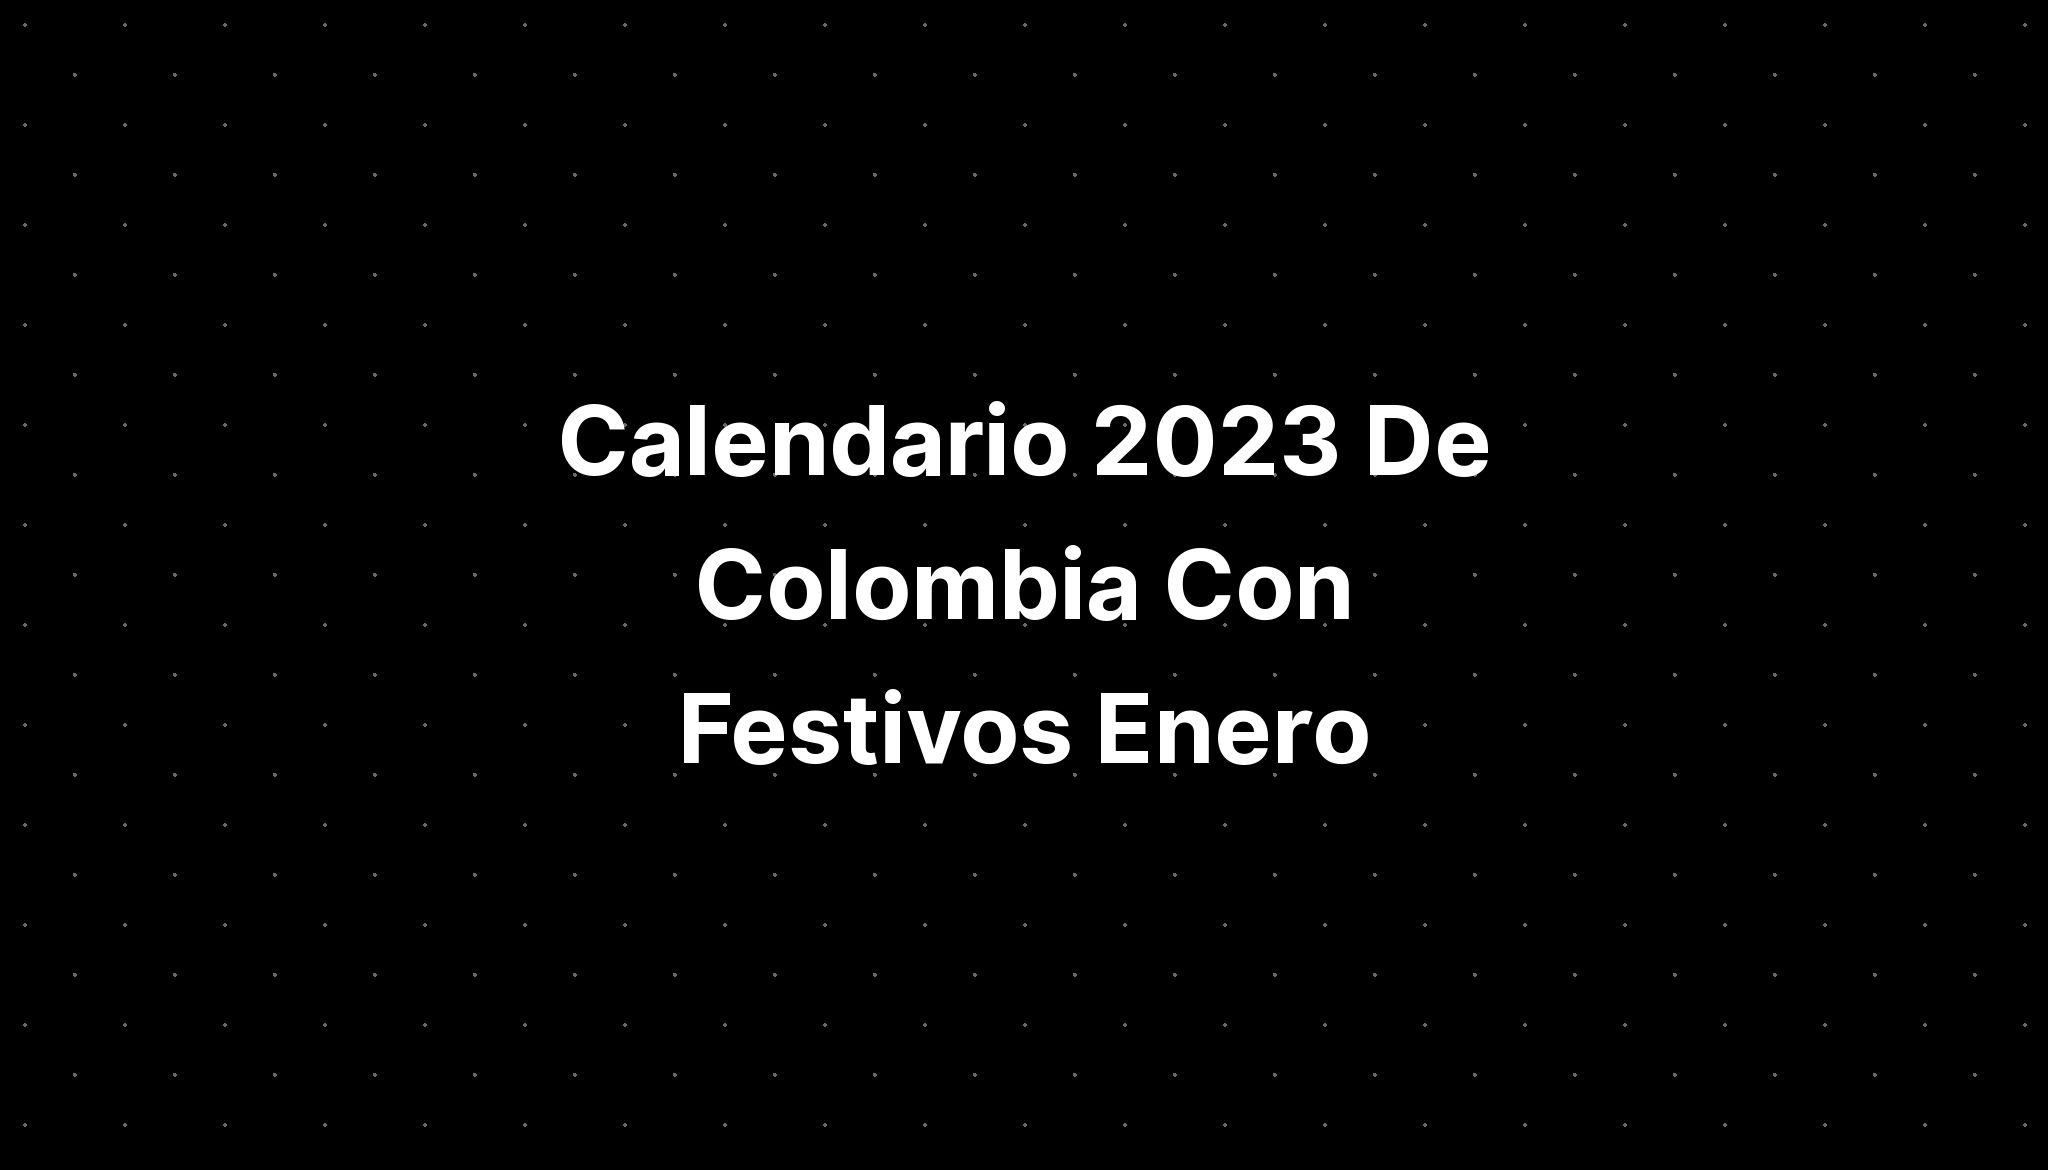 Calendario 2023 De Colombia Con Festivos Enero Imagesee